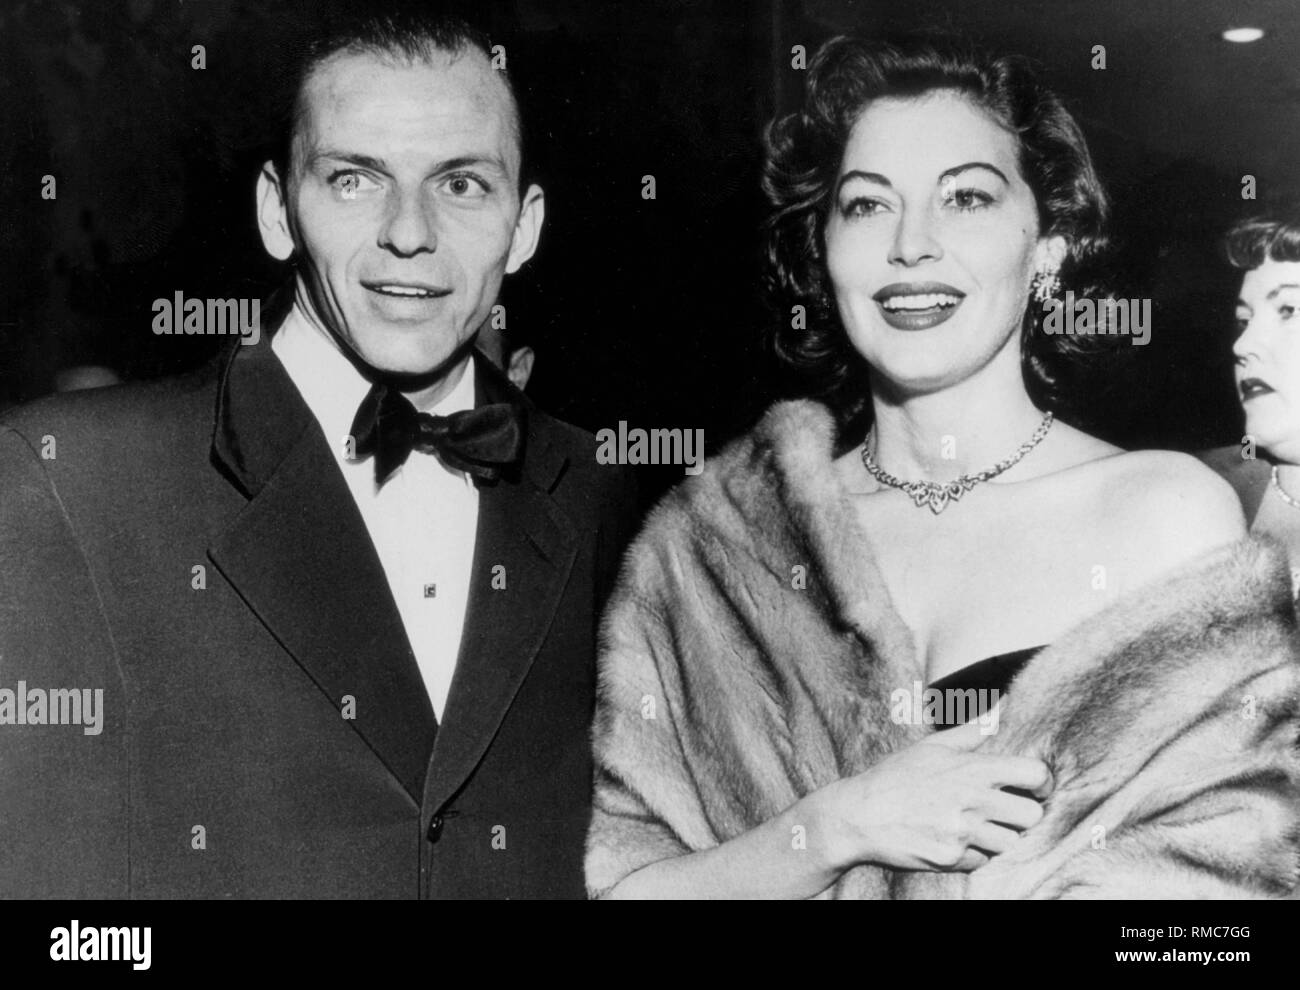 Amerikanischen Sänger und Filmschauspieler Frank Sinatra mit seiner Frau, Hollywood Schauspielerin Ava Gardner. (Undatiertes Foto) Stockfoto